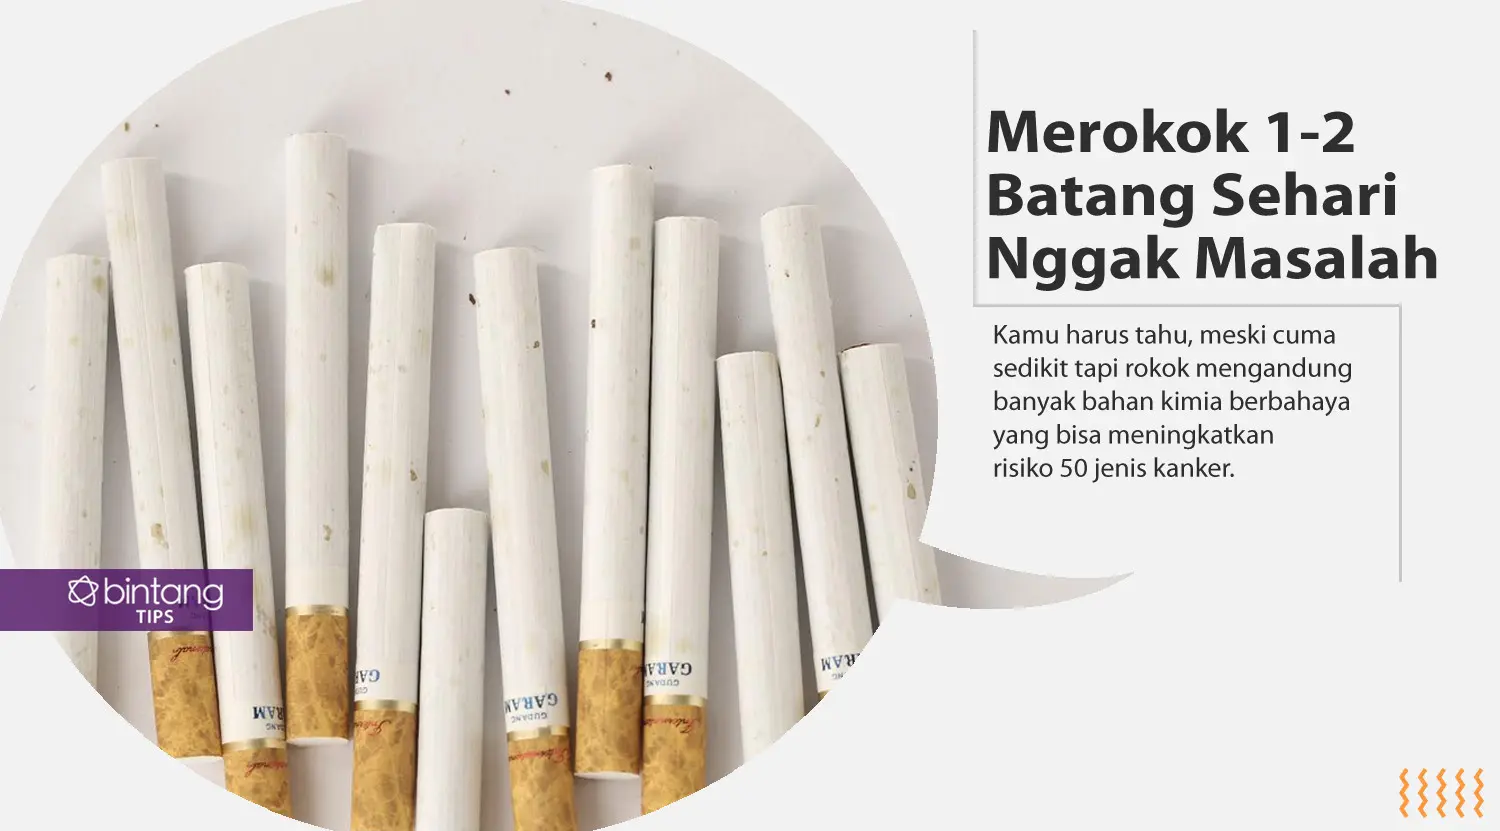 Mitos tentang rokok yang nggak boleh kamu percaya. (Foto: Daniel Kampua, Digital Imaging: Nurman Abdul Hakim/Bintang.com)